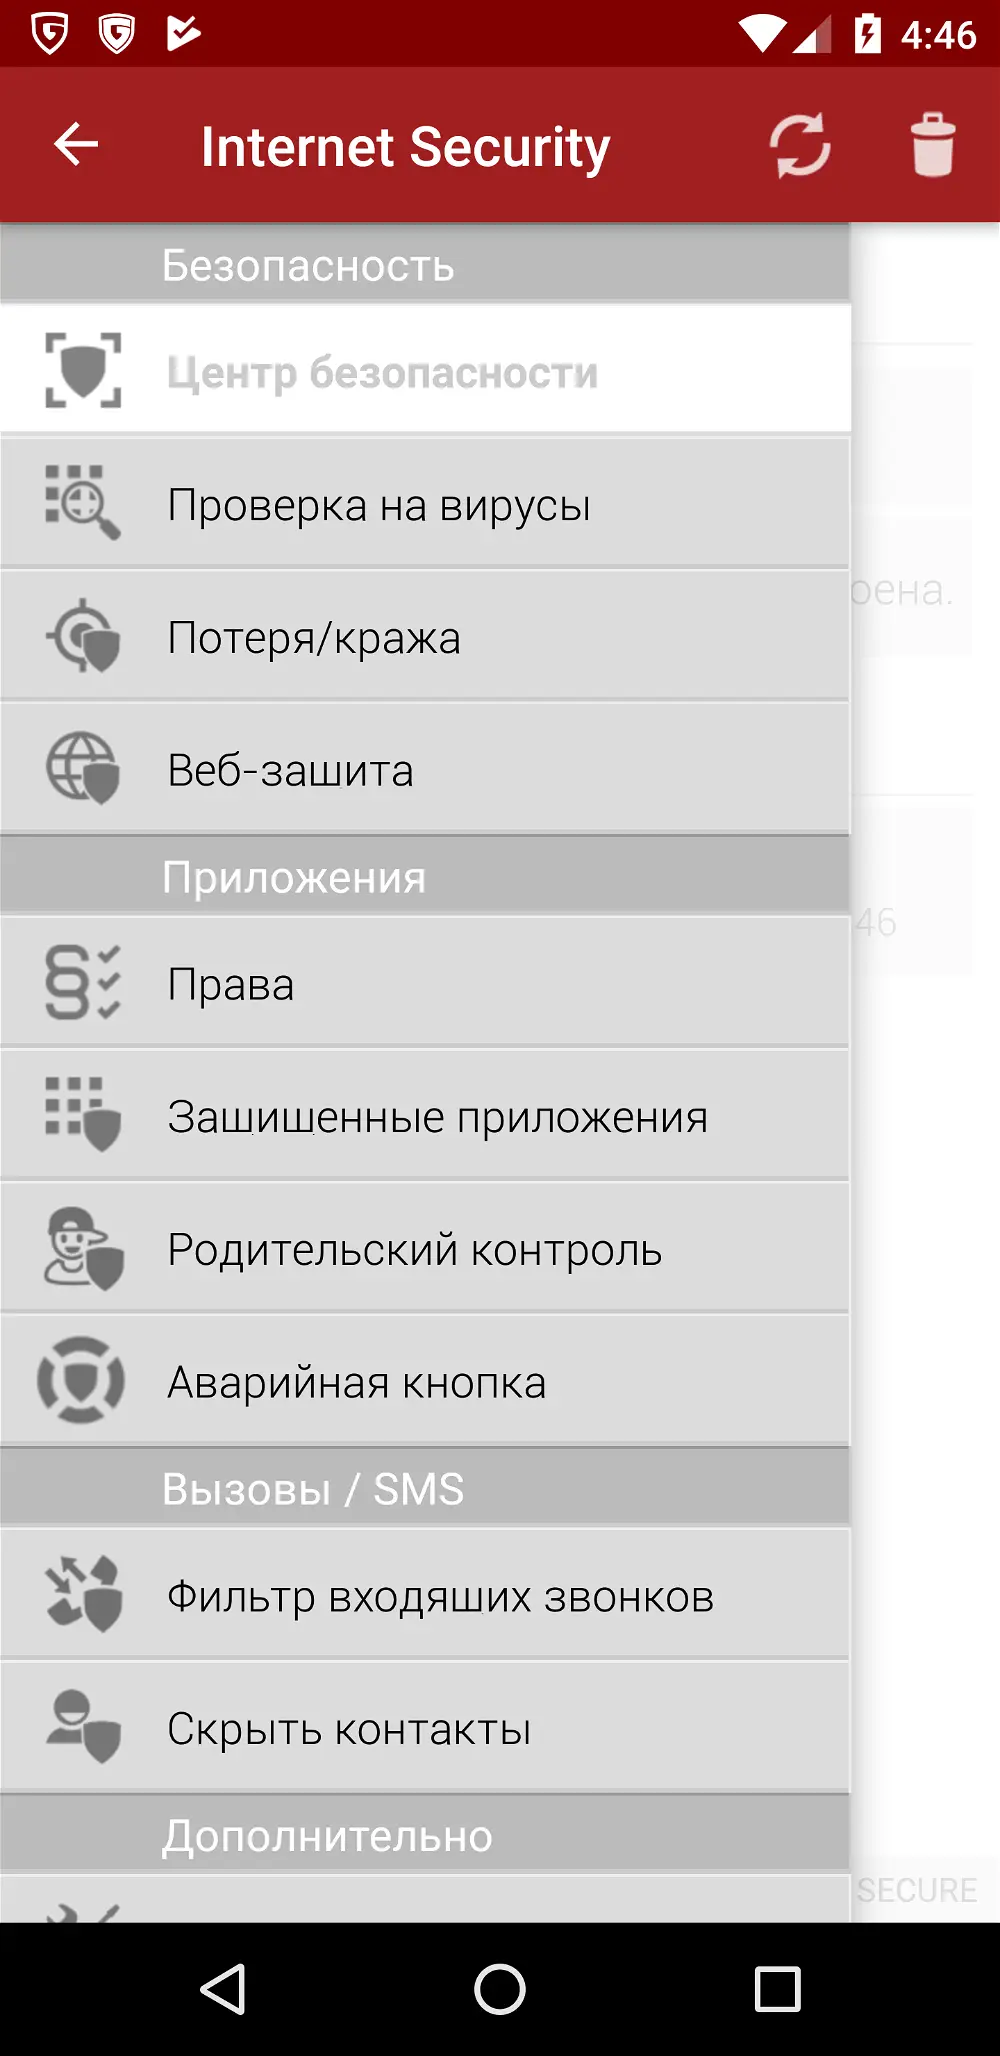 Bitdefender Mobile Security   : Крім надійного захисту, додаток пропонує корисні додаткові функції